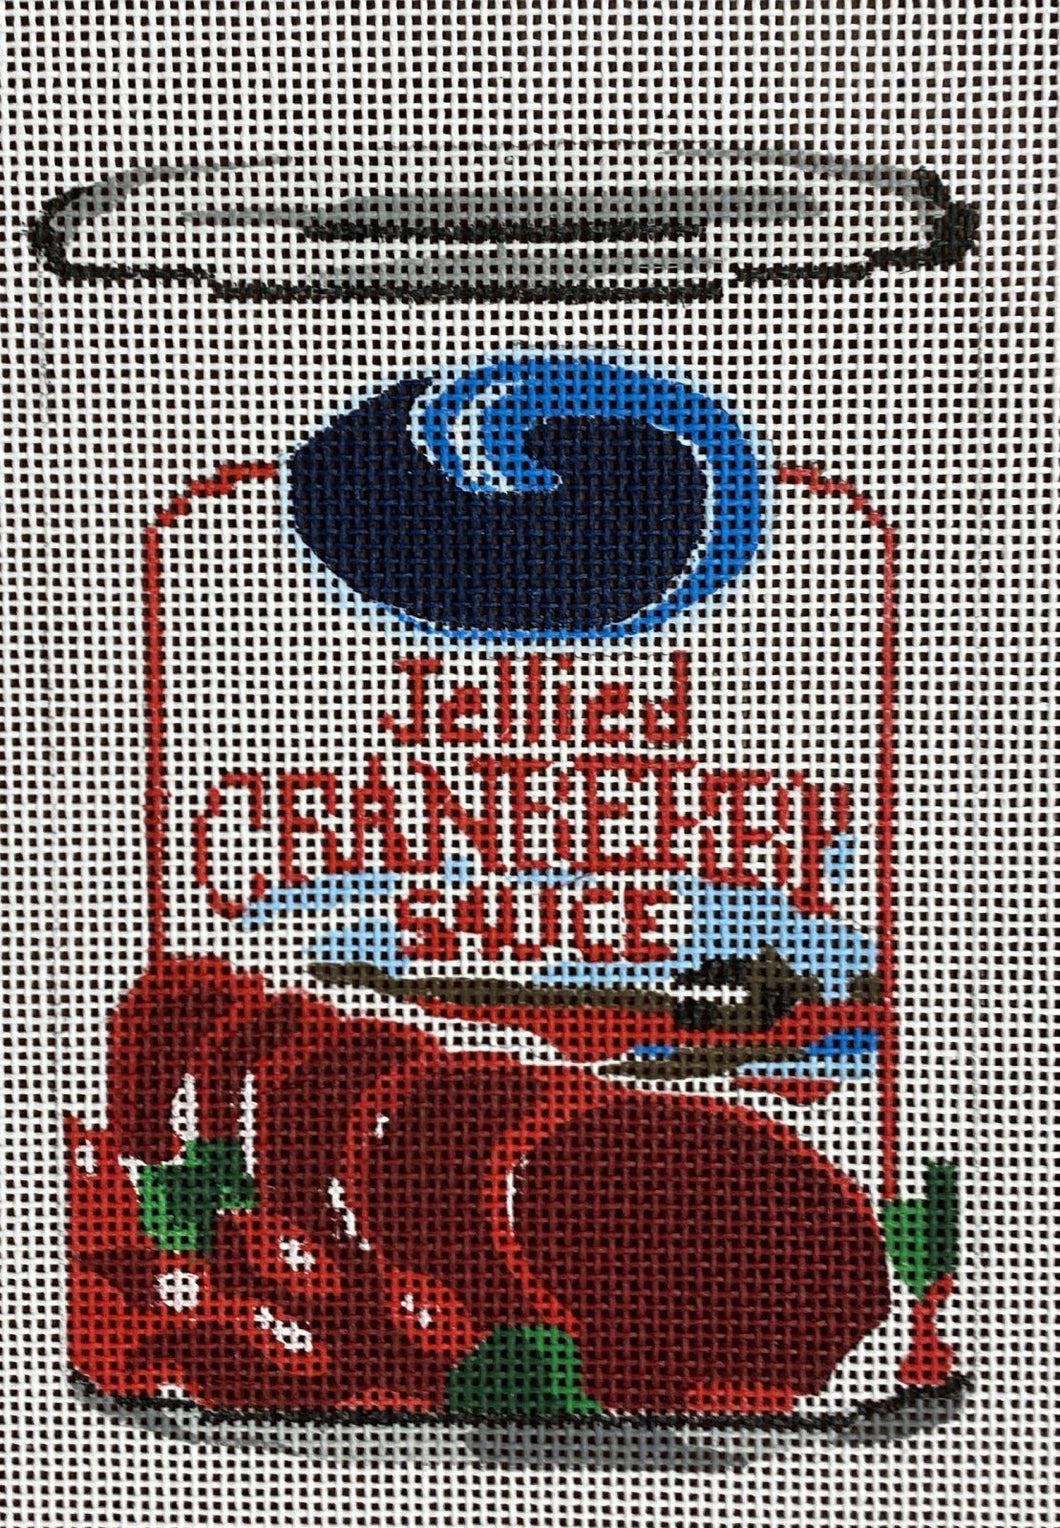 GG24 cranberry sauce